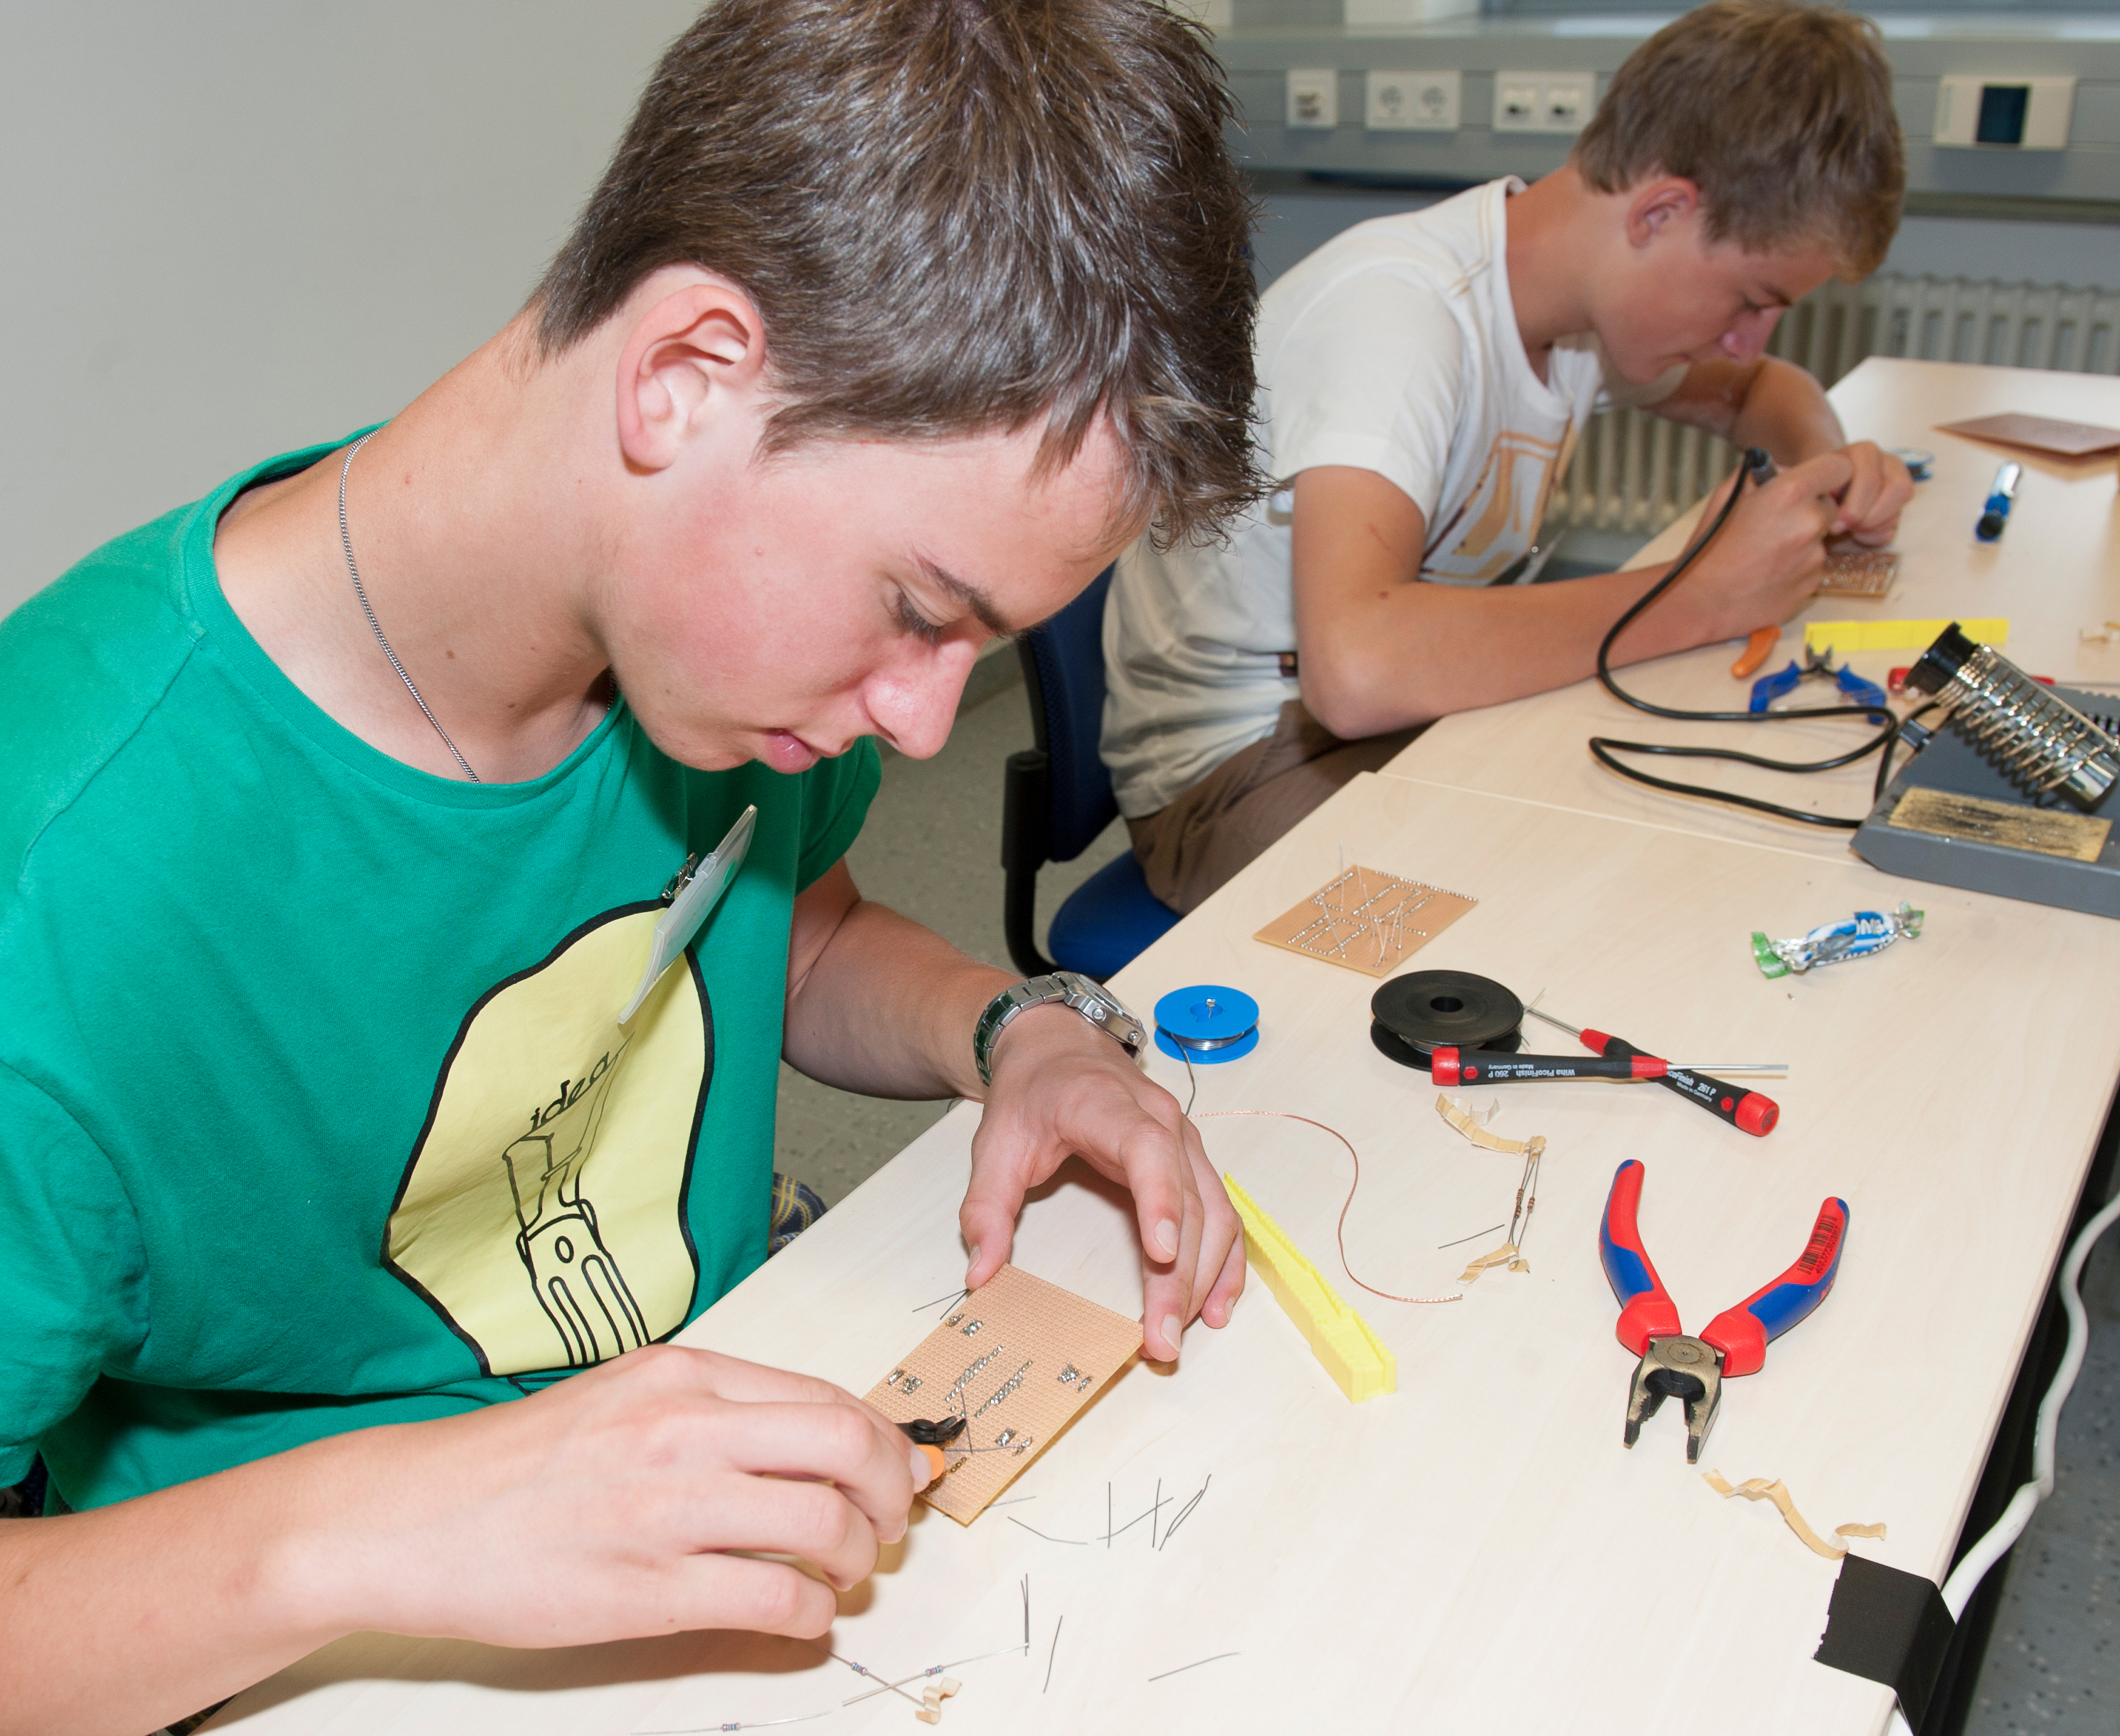 Die Talent-School des Fraunhofer IIS fördert technisch interessierte Jugendliche. © Fraunhofer IIS/Rida El Ali